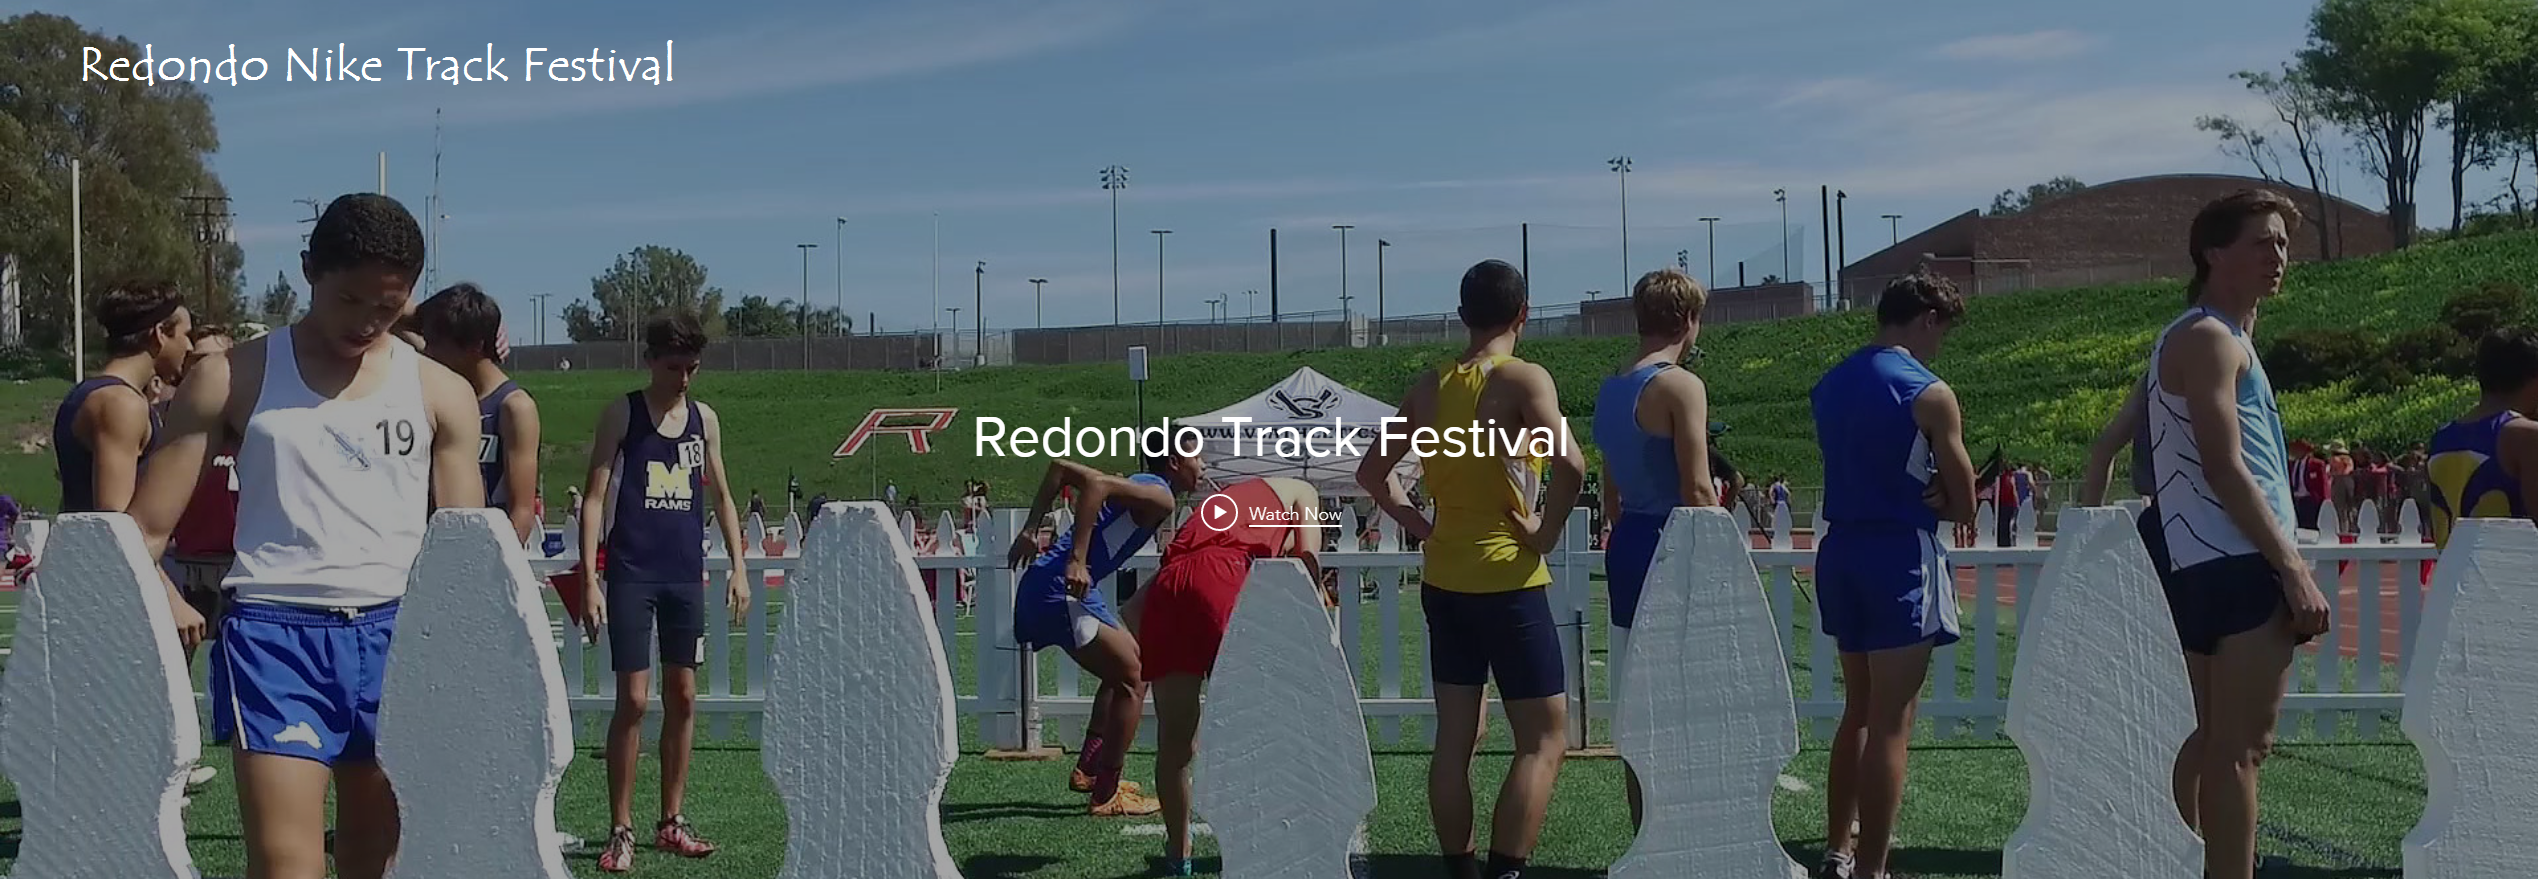 2018-03-09 - Meet Teaser - Redondo Track Festival